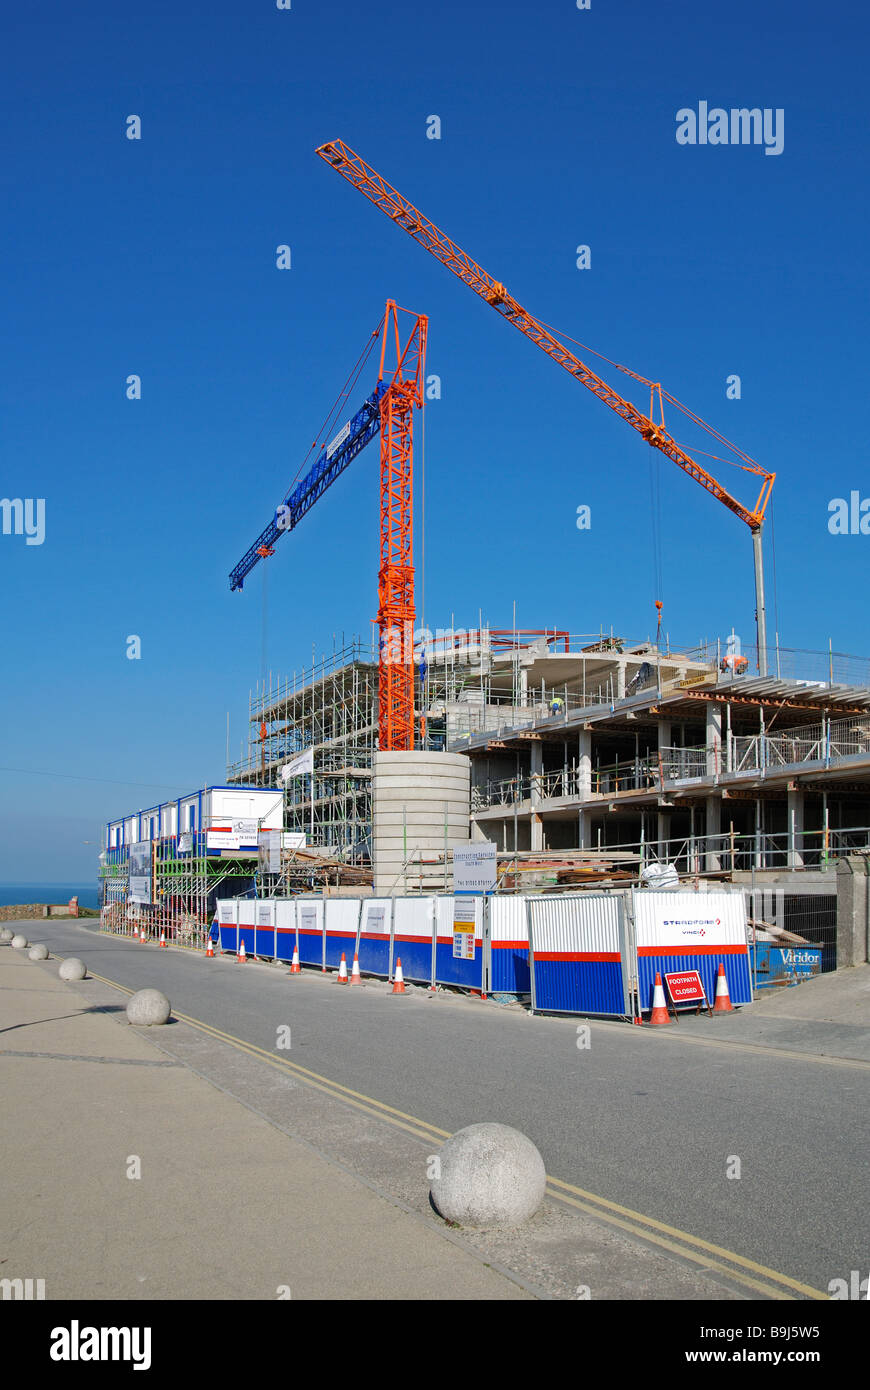 Un nouvel hôtel et le complexe en construction près de la plage de fistral, Newquay, Cornwall, uk Banque D'Images